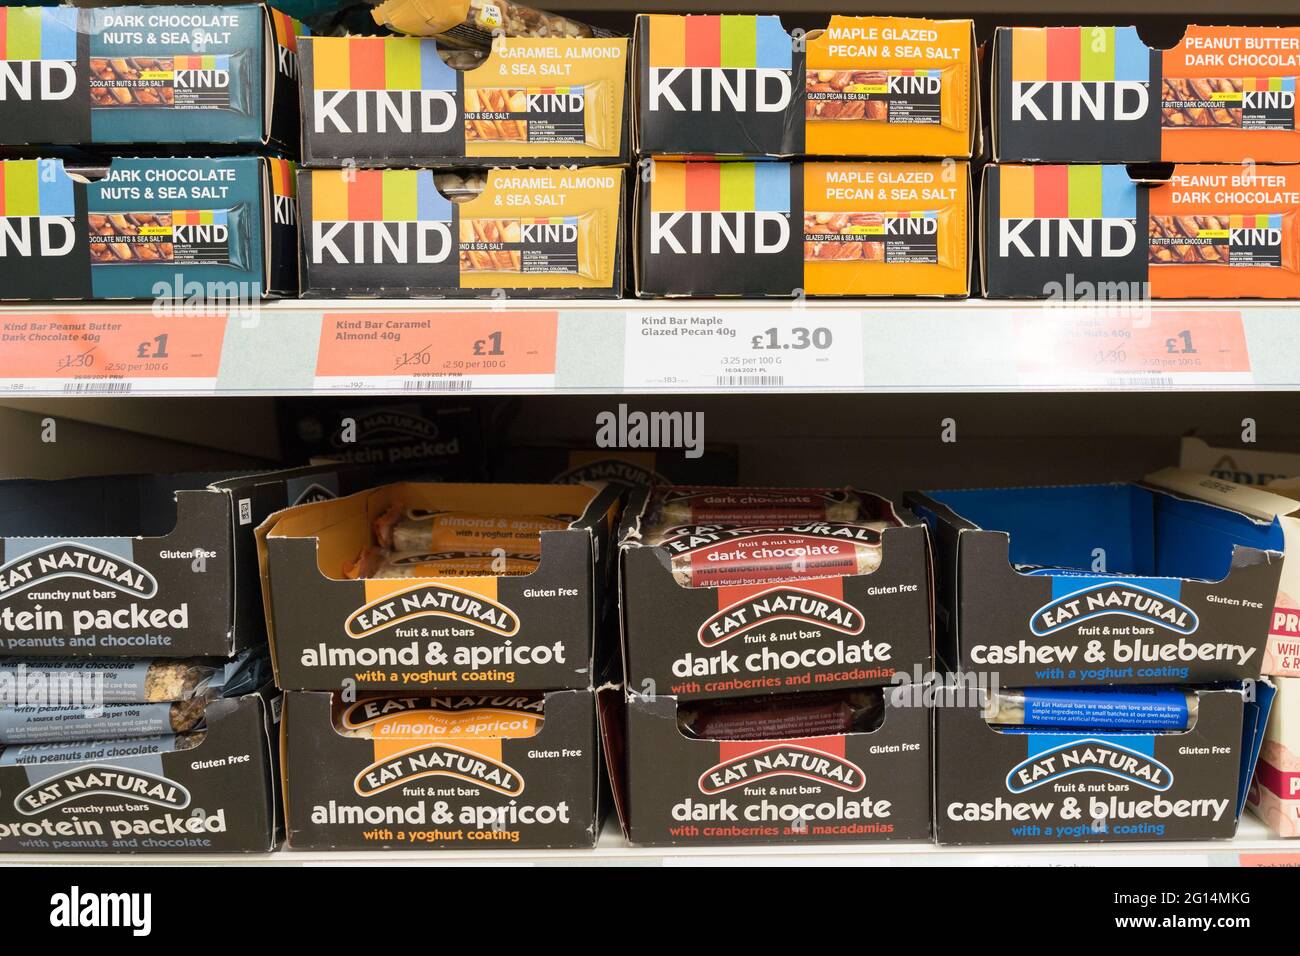 KIND and Eat les barres de protéines naturelles sont en vente sur les étagères du supermarché Sainsburys, Angleterre, Kent, Royaume-Uni Banque D'Images